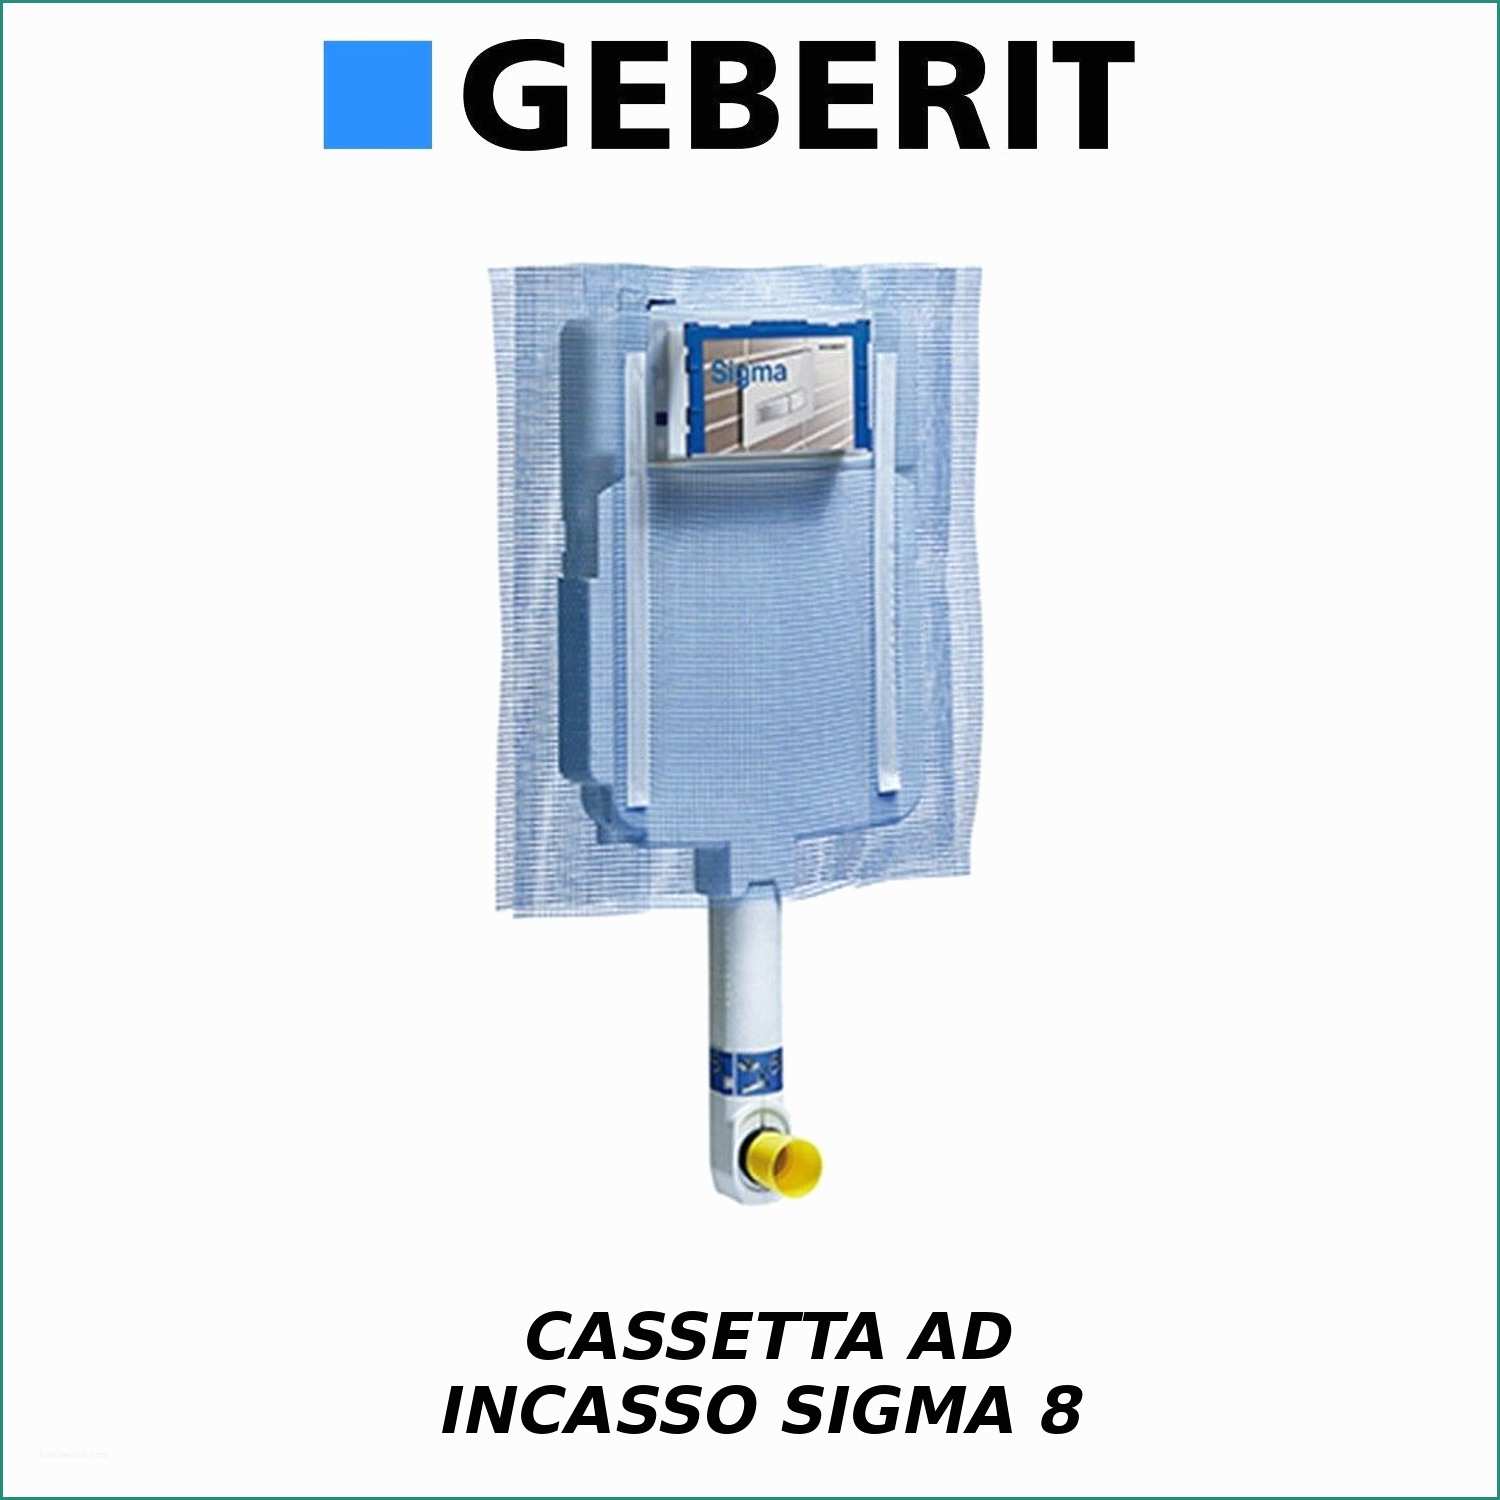 Cassetta Esterna Wc Geberit Perdita Acqua E Cassetta Wc Incasso Geberit Sigma8 Bri An Con Accessori E Ricambi